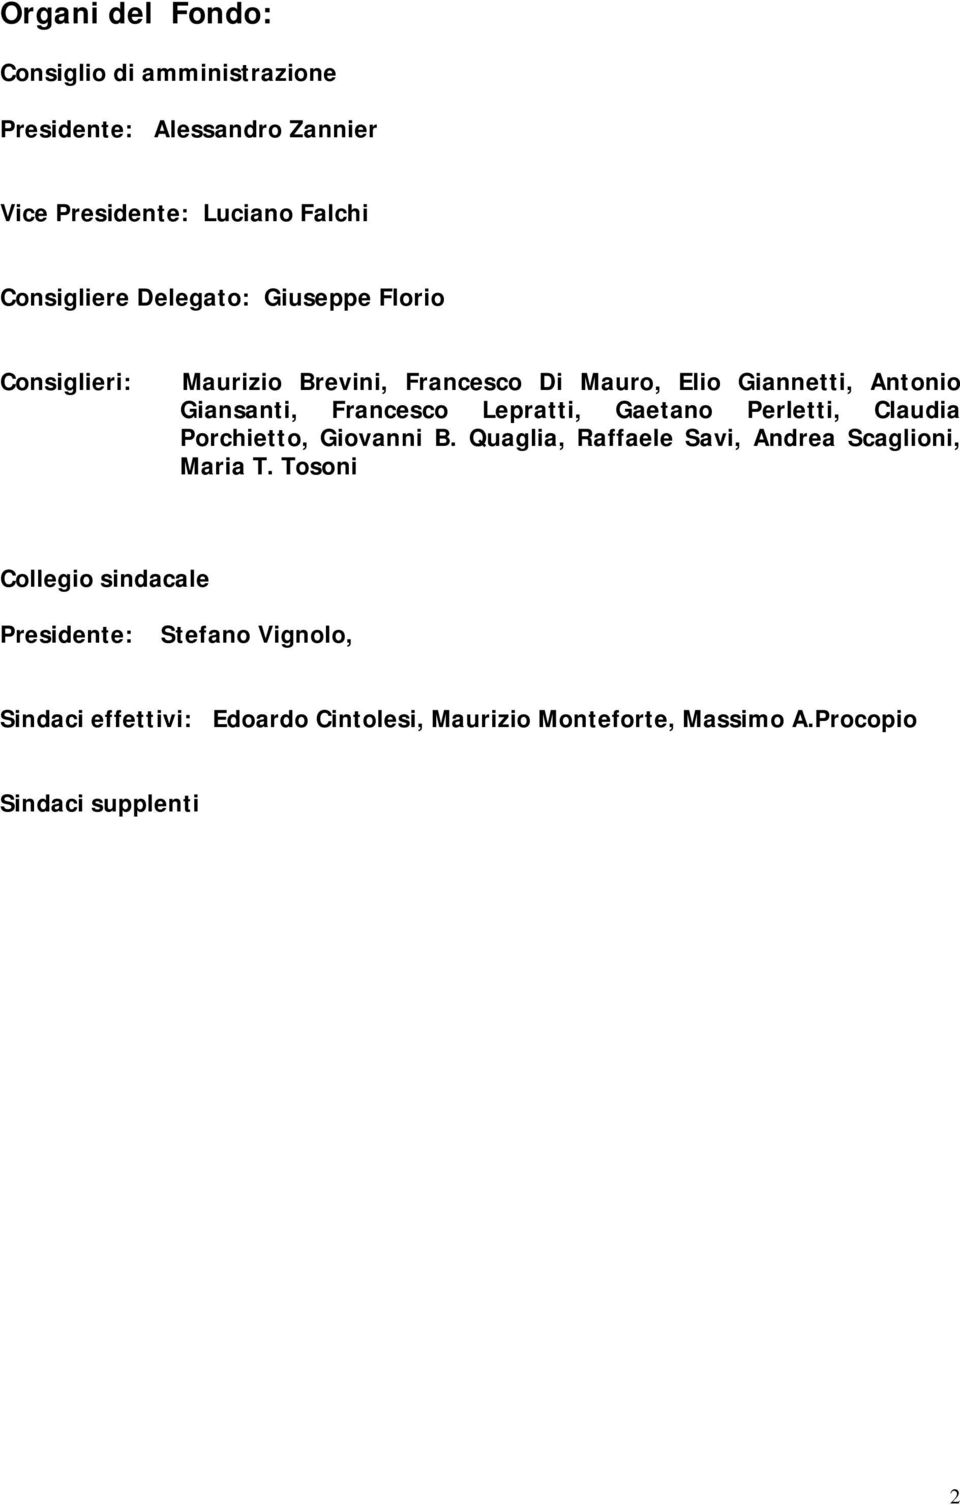 Lepratti, Gaetano Perletti, Claudia Porchietto, Giovanni B. Quaglia, Raffaele Savi, Andrea Scaglioni, Maria T.